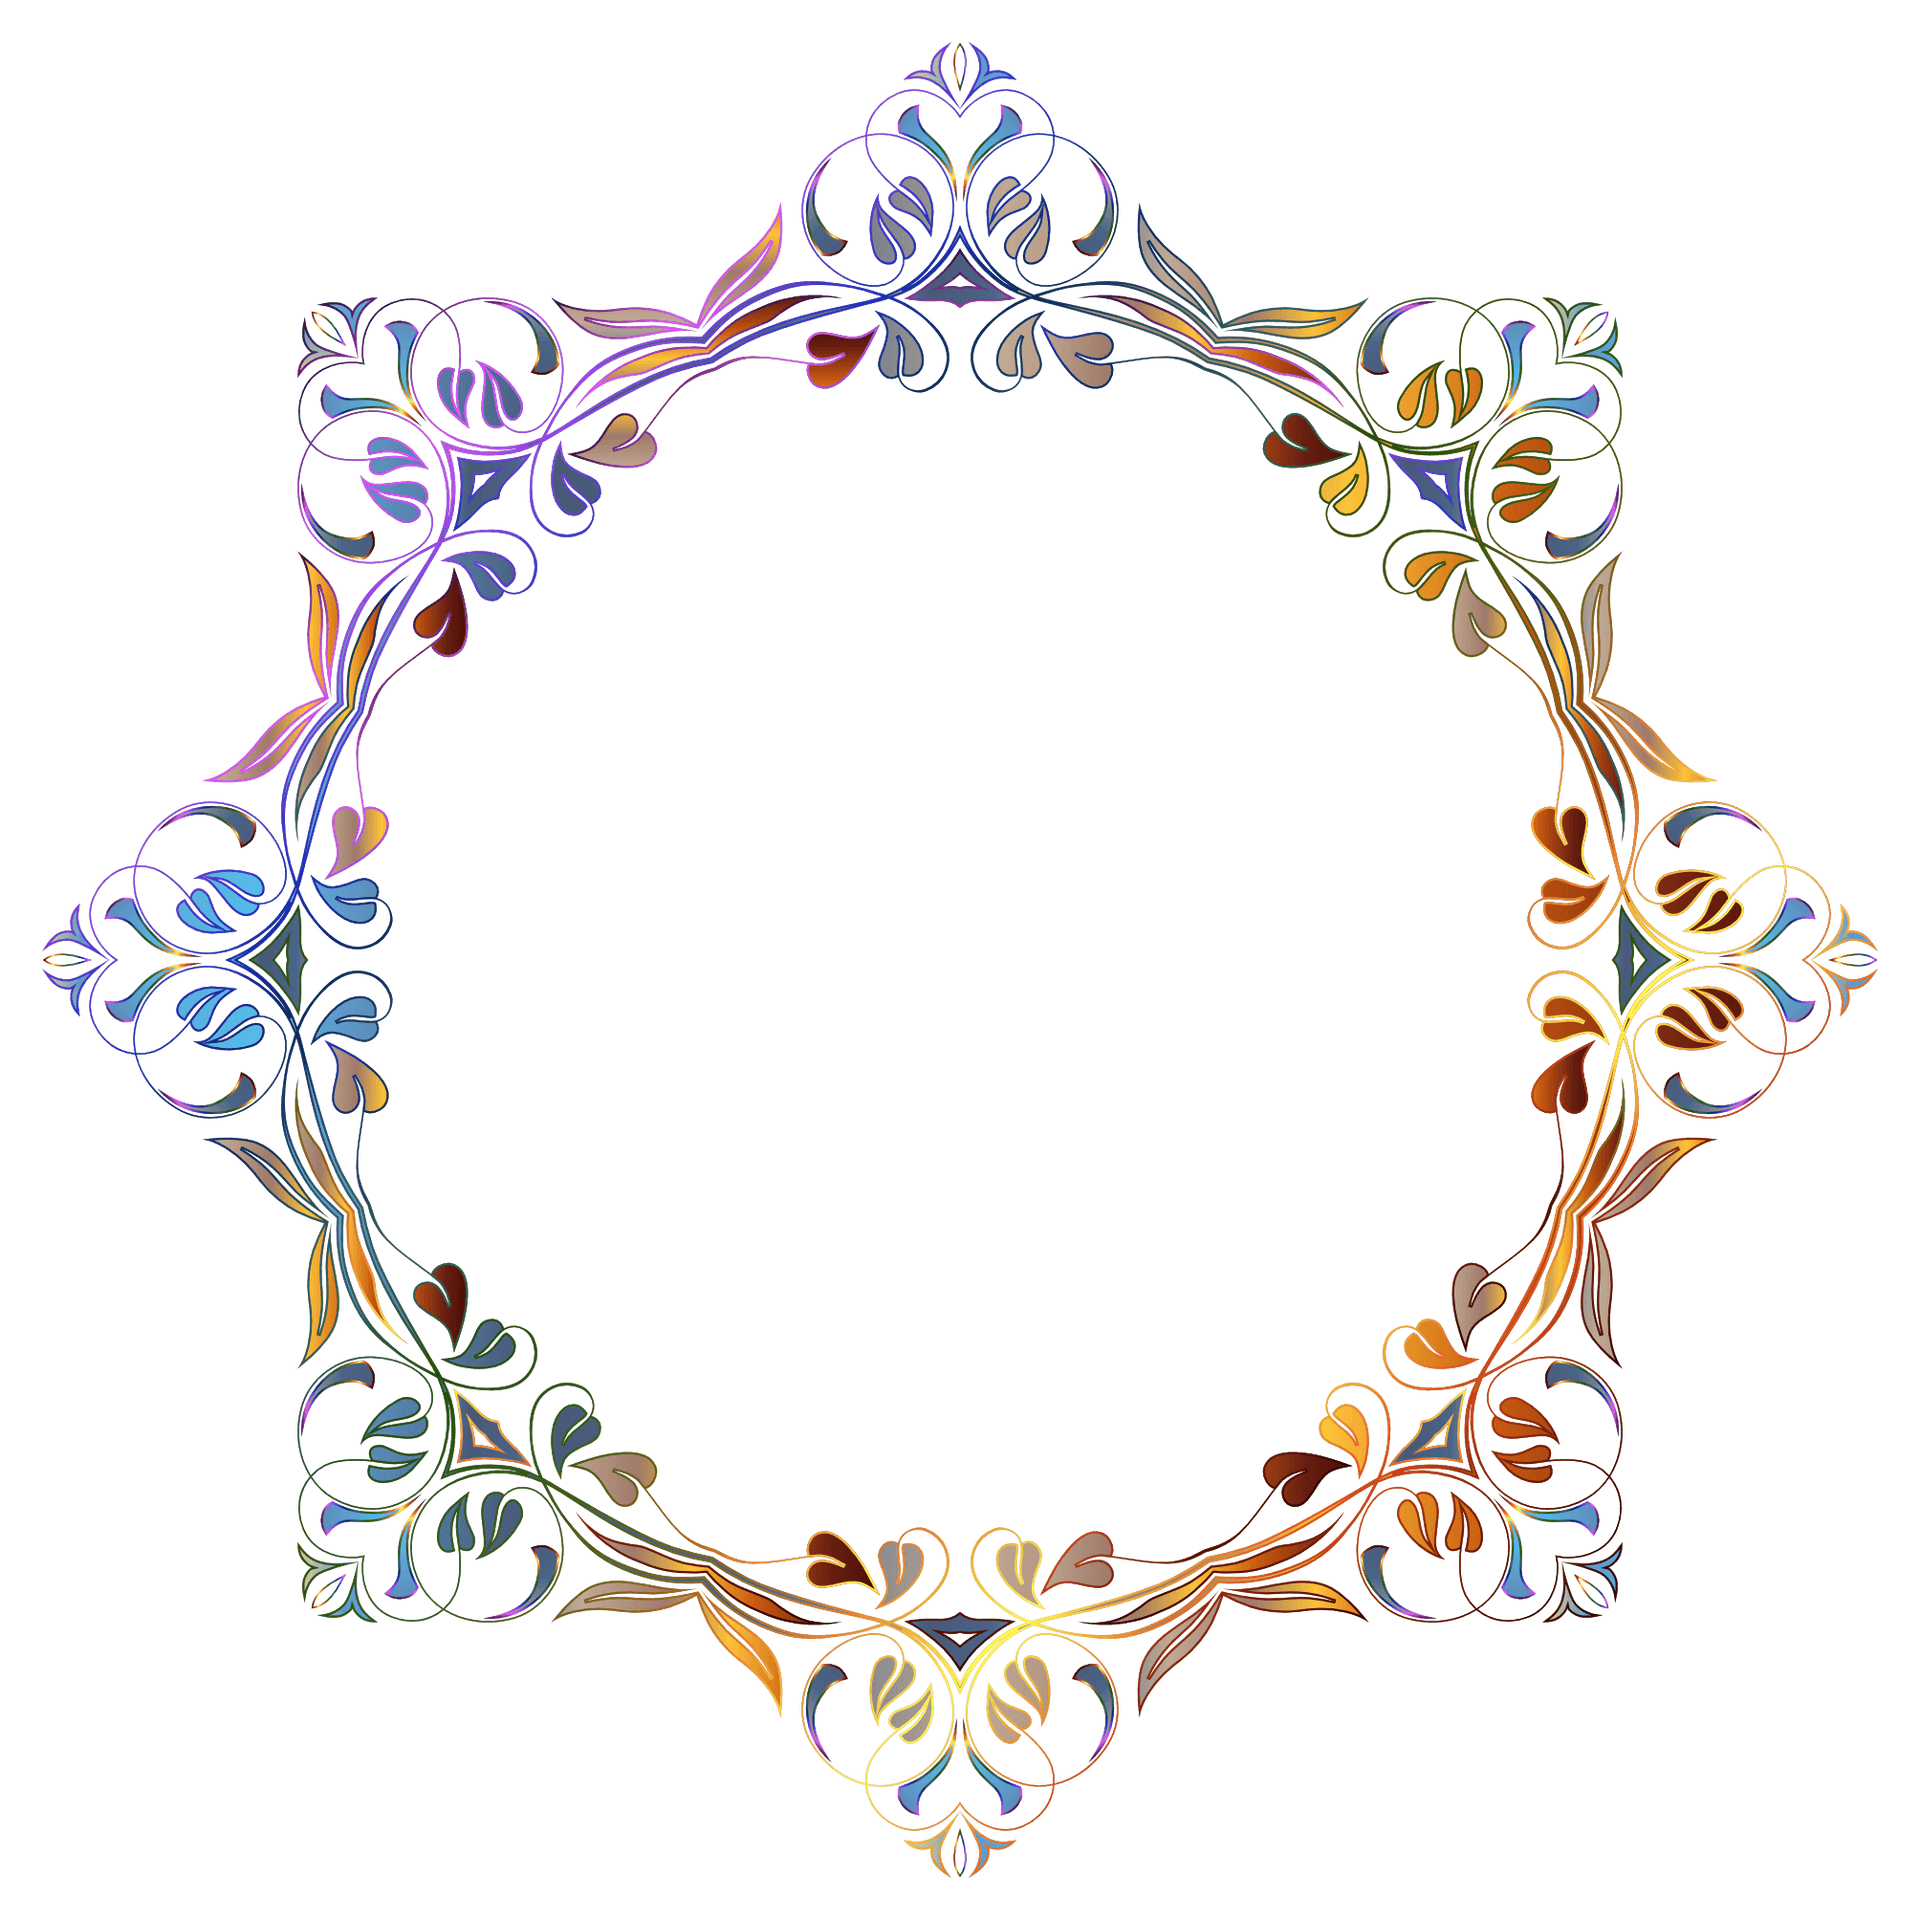 Illuminated Floral Frame Design PNG image